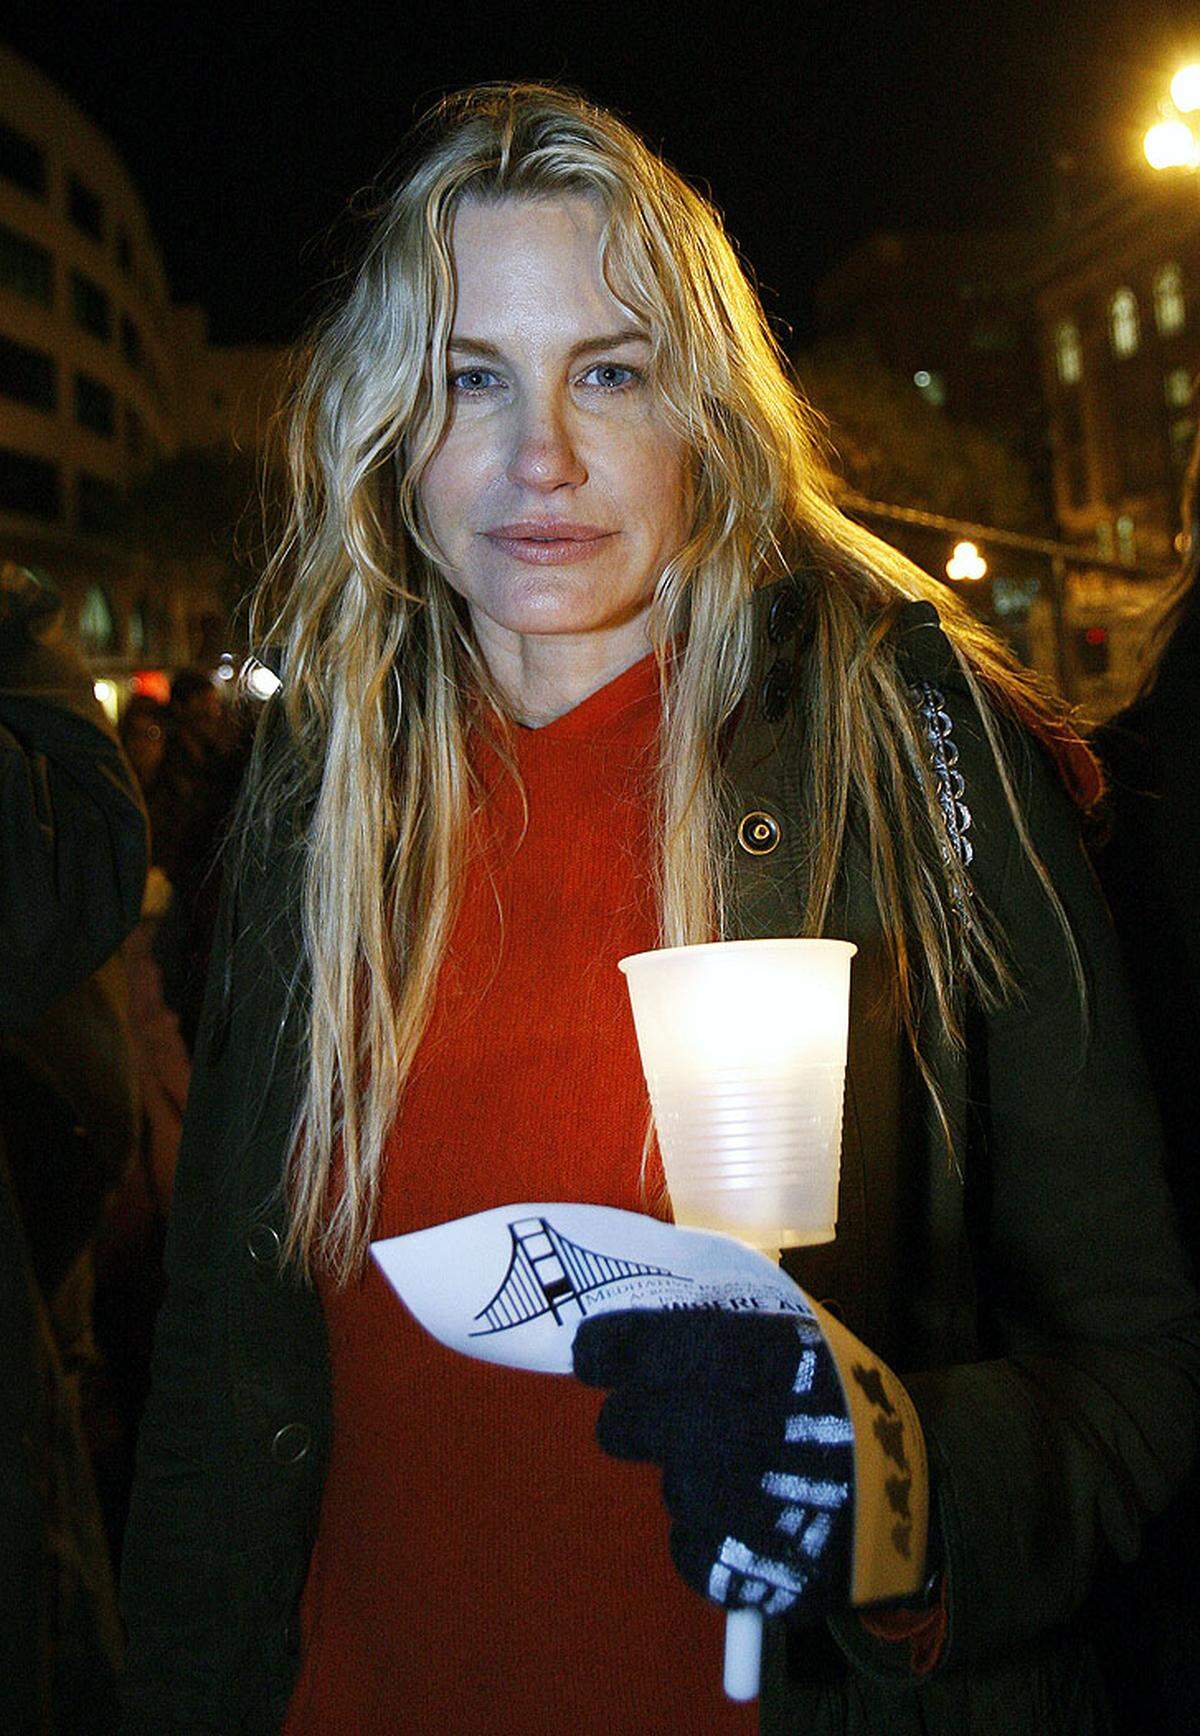 Aufmerksamkeit bekam sie 2002 auch durch ihren Auftritt im Musikvideo "Feel" von Robbie Williams.